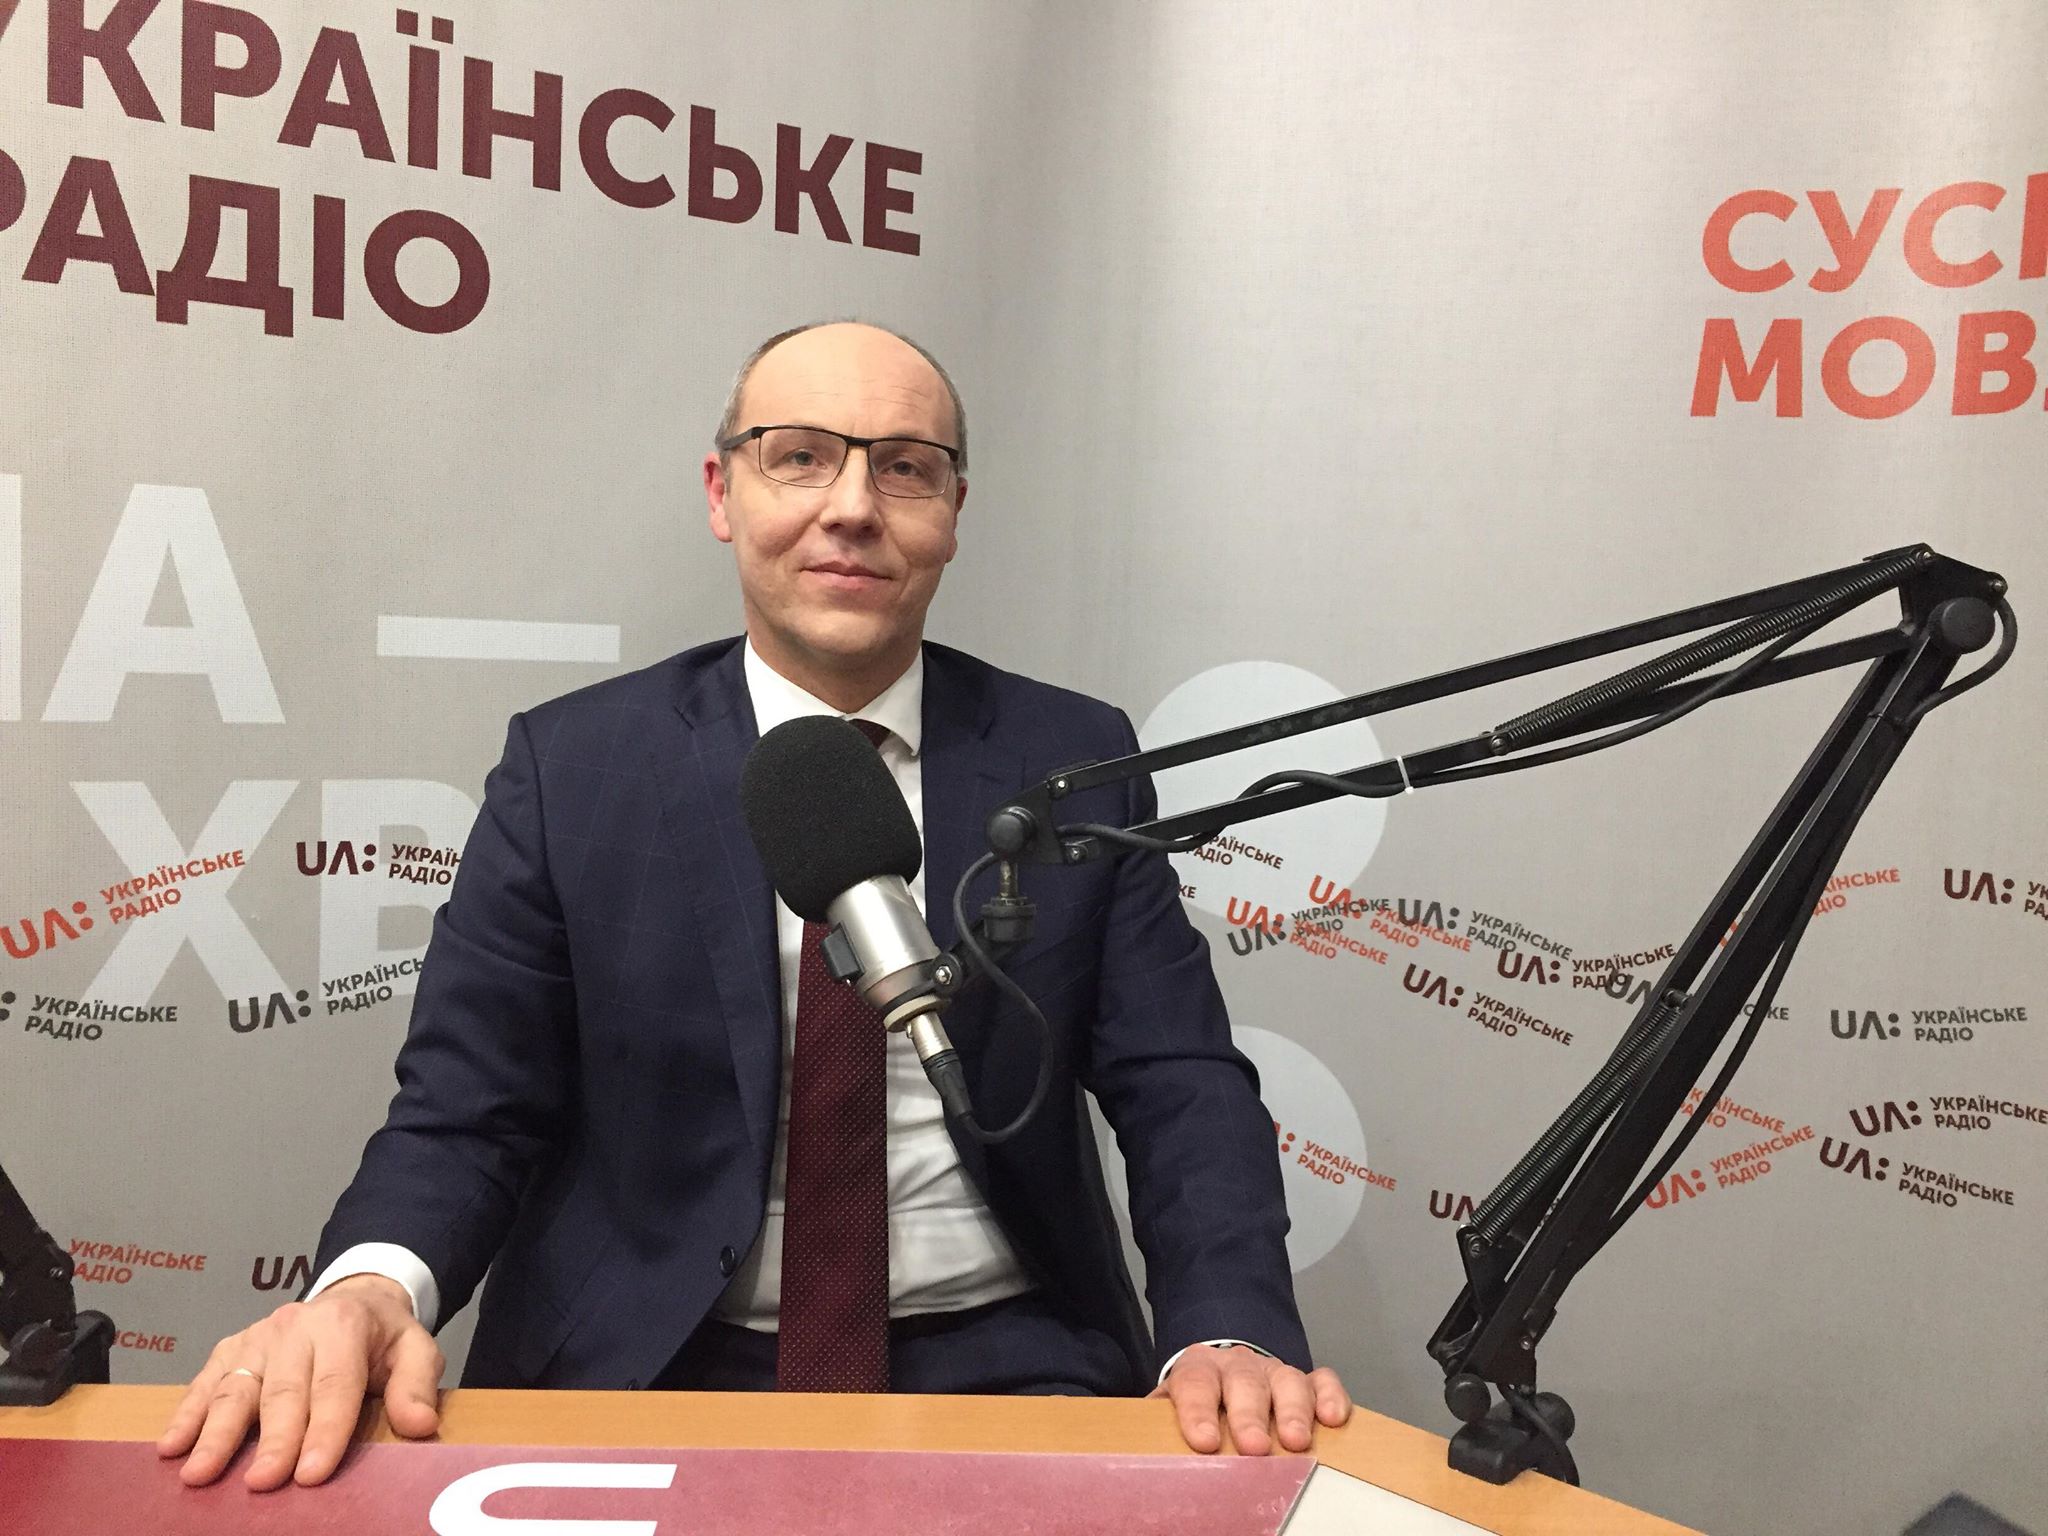 Для Путина крайне важно убедить мир, что Майдан был гражданским противостоянием — Андрей Парубий